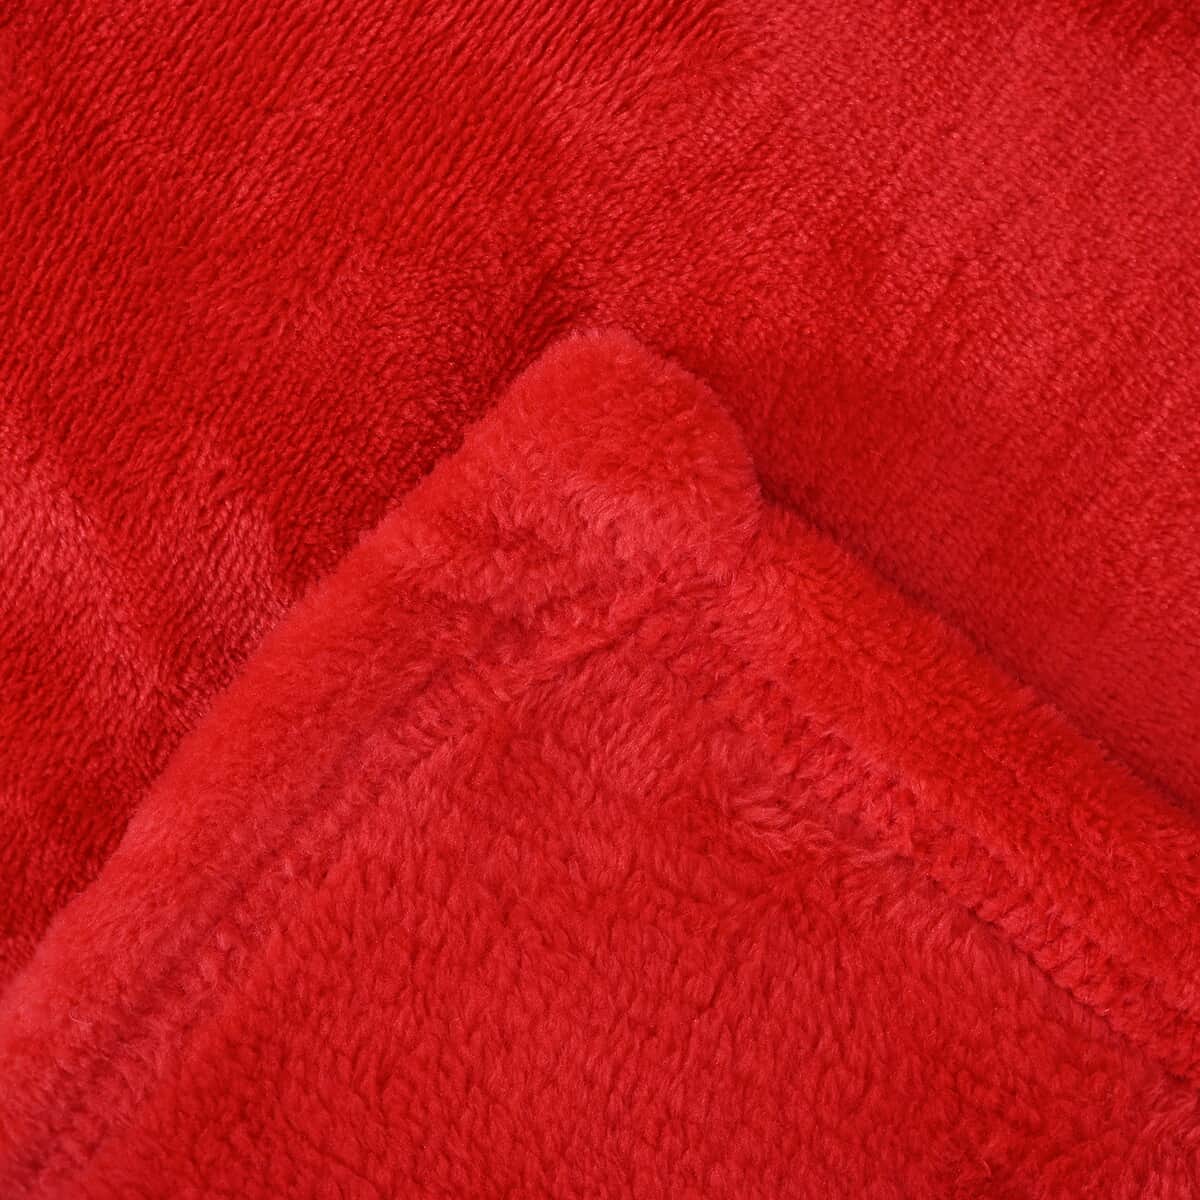 Homesmart Set of 2 Black/Flower Print Pattern & Red Solid Microfiber Flannel Blanket image number 6